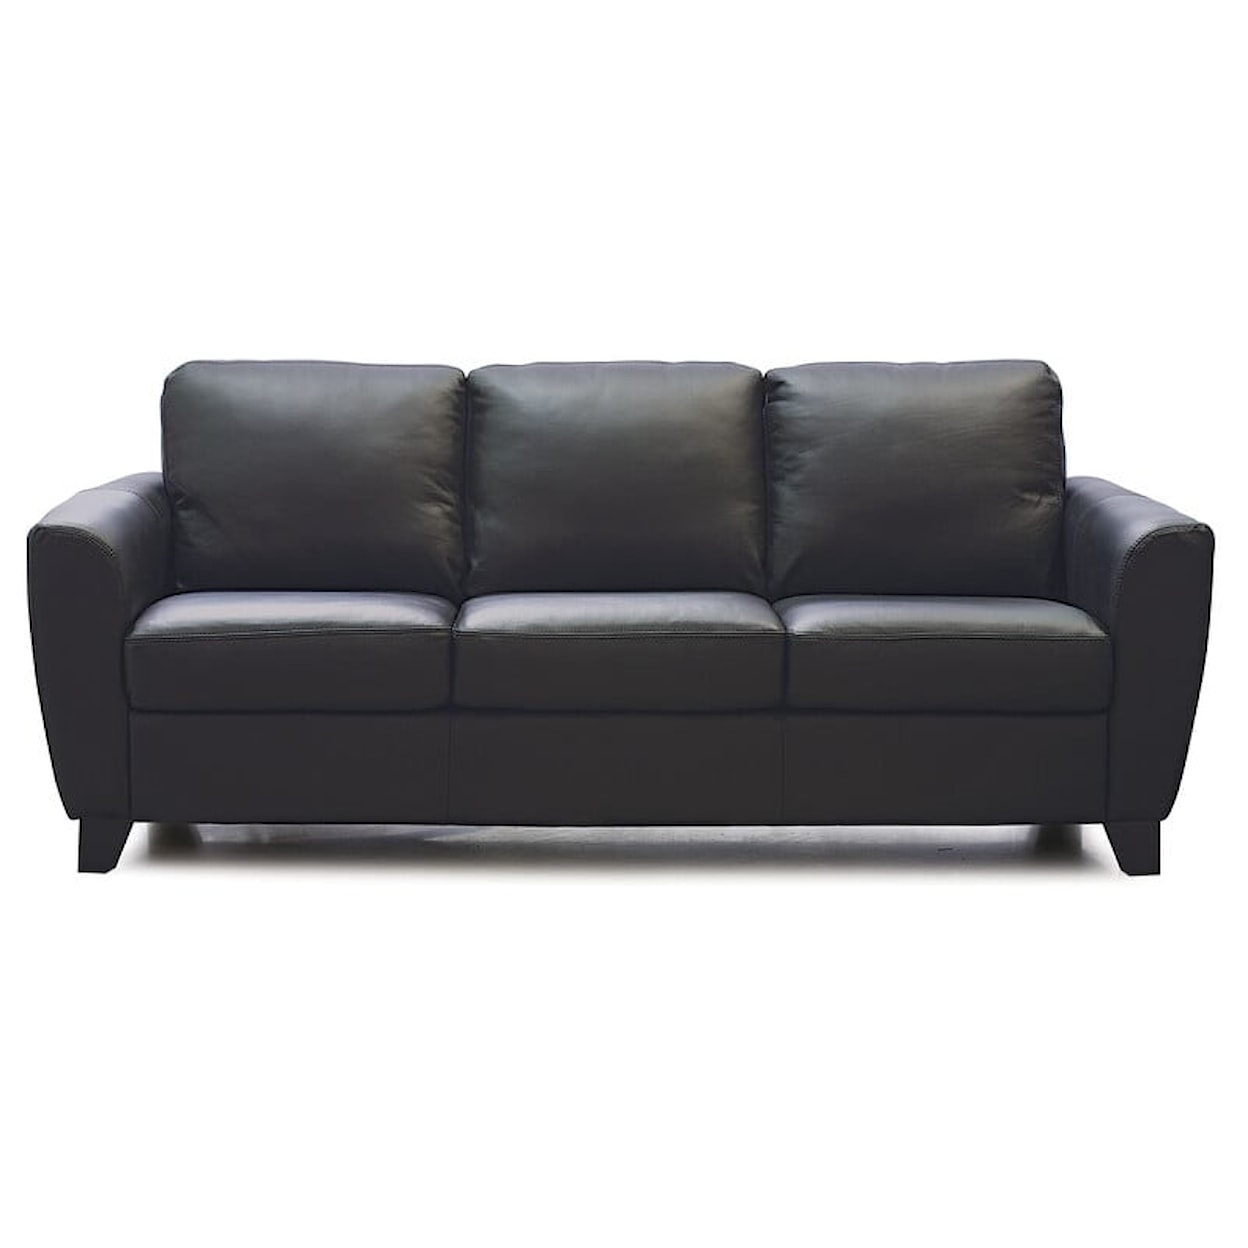 Palliser Marymount Marymount Upholstered Sofa